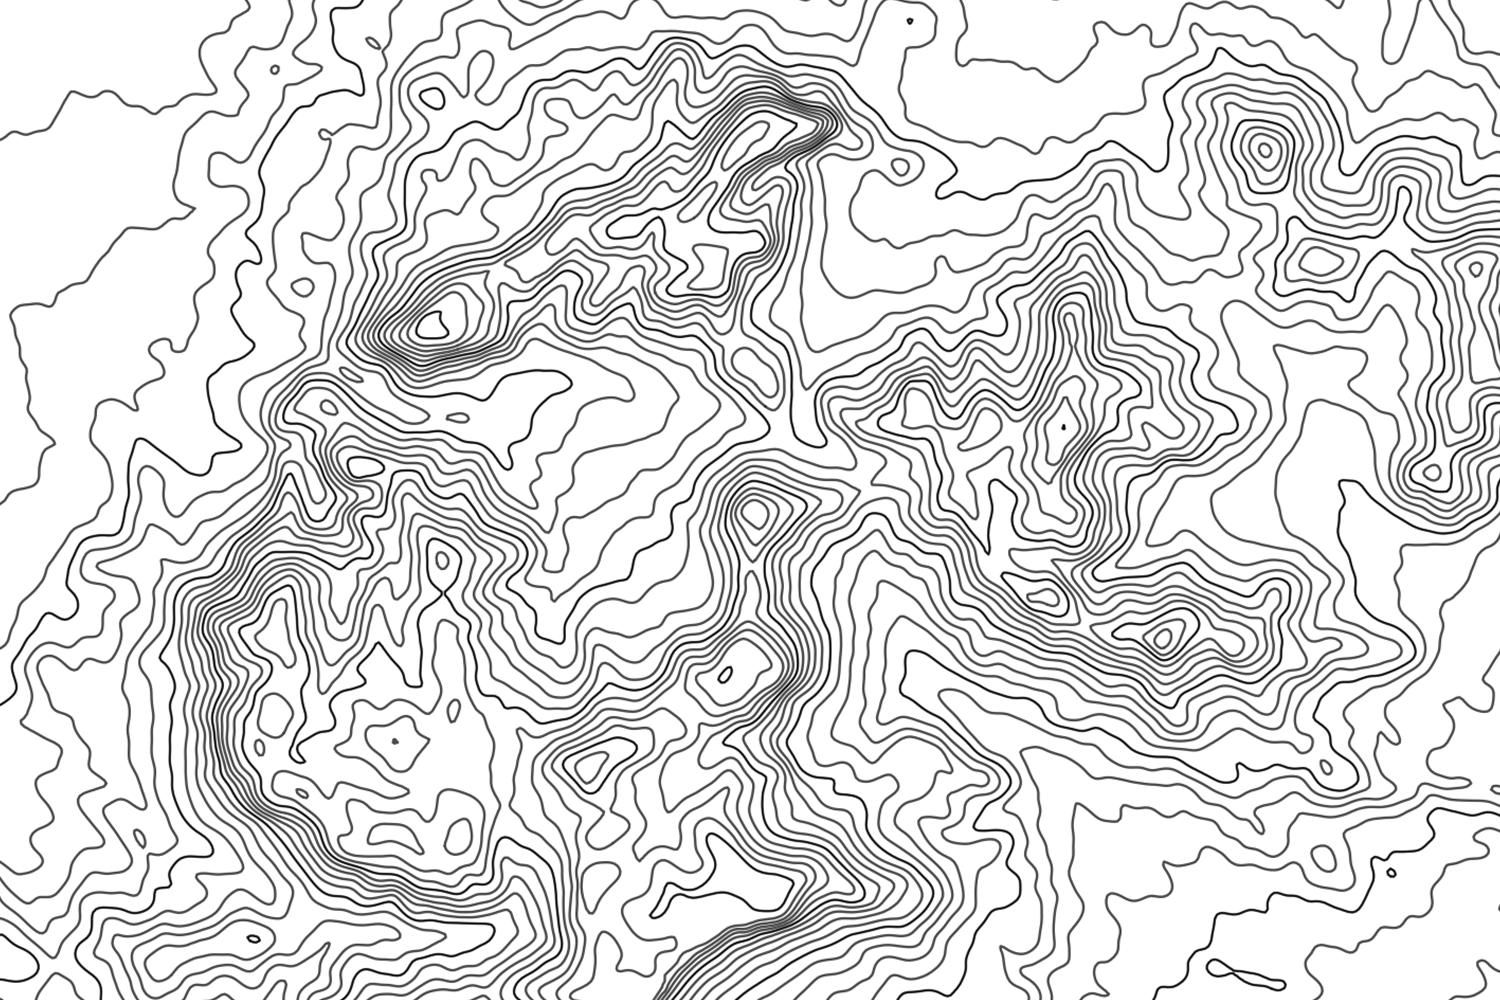 Big Bend Topographic Map Big Bend Topographic Map Art – Modern Map Art